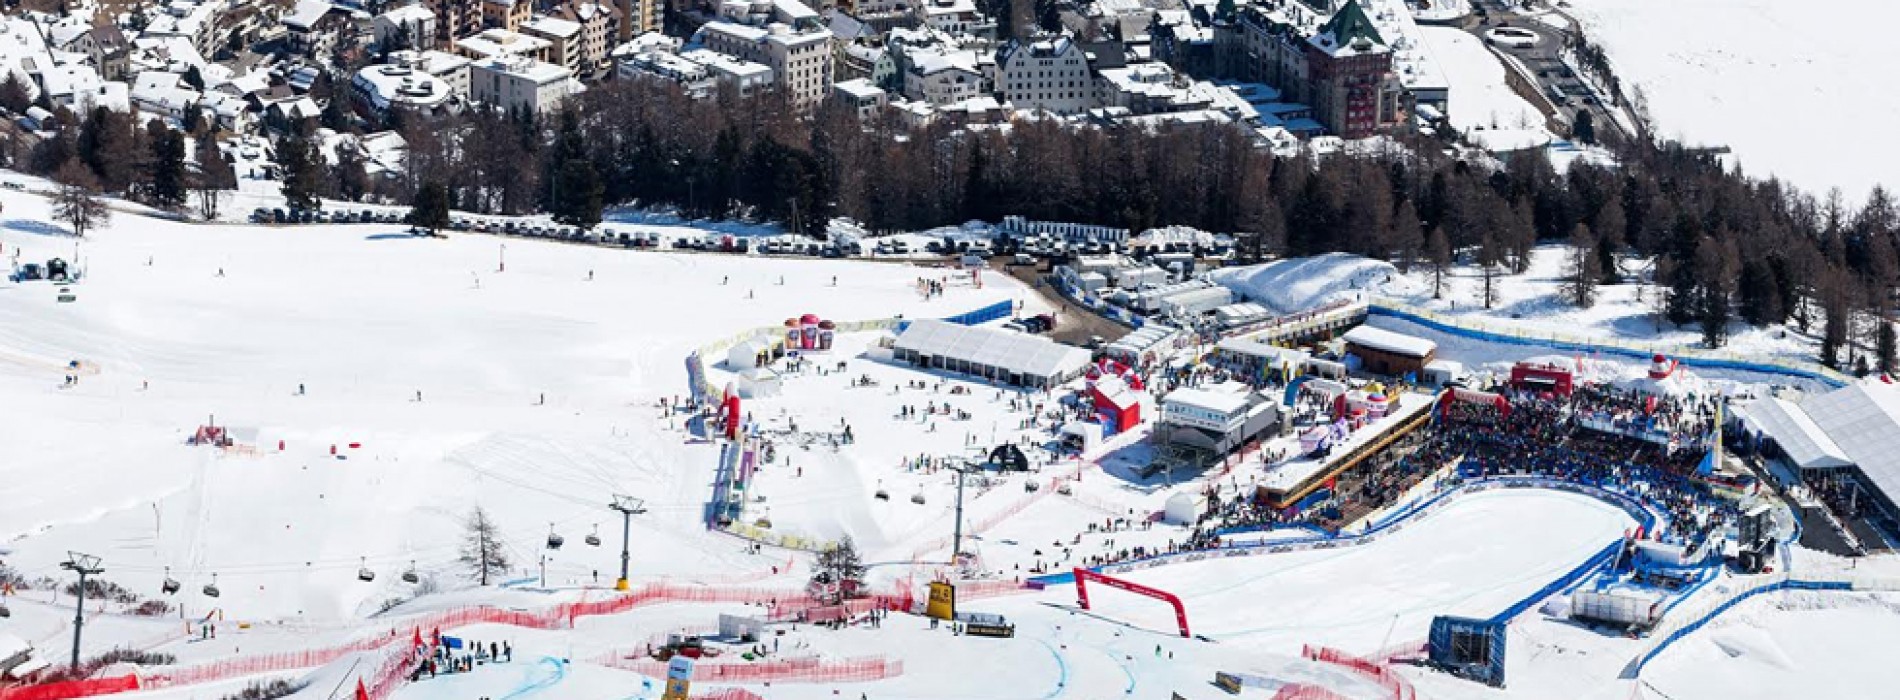 FIS Alpine World Ski Championships St. Moritz 2017